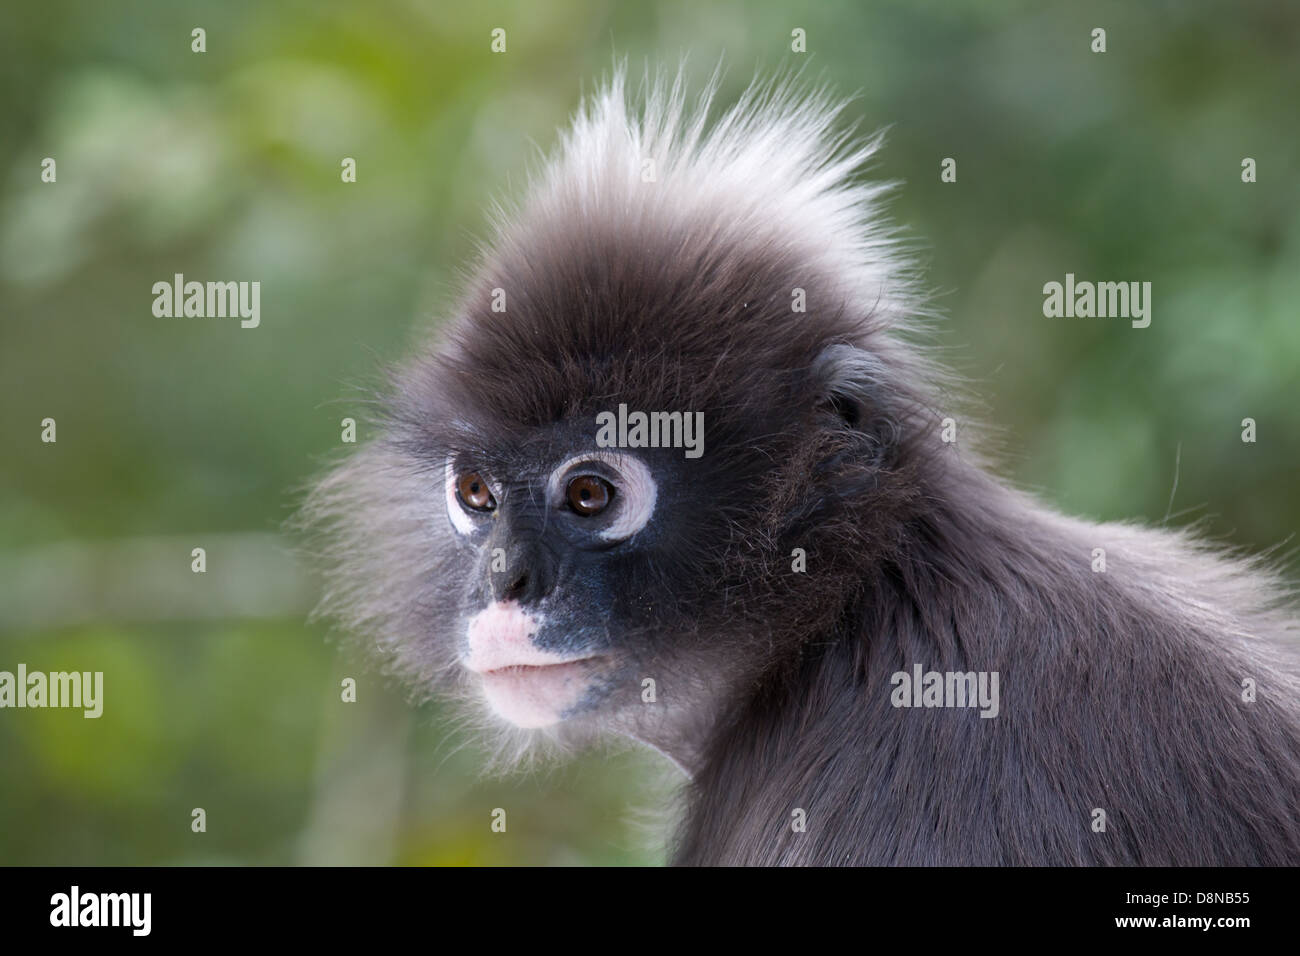 Spectacled Langur Monkey Stock Photo